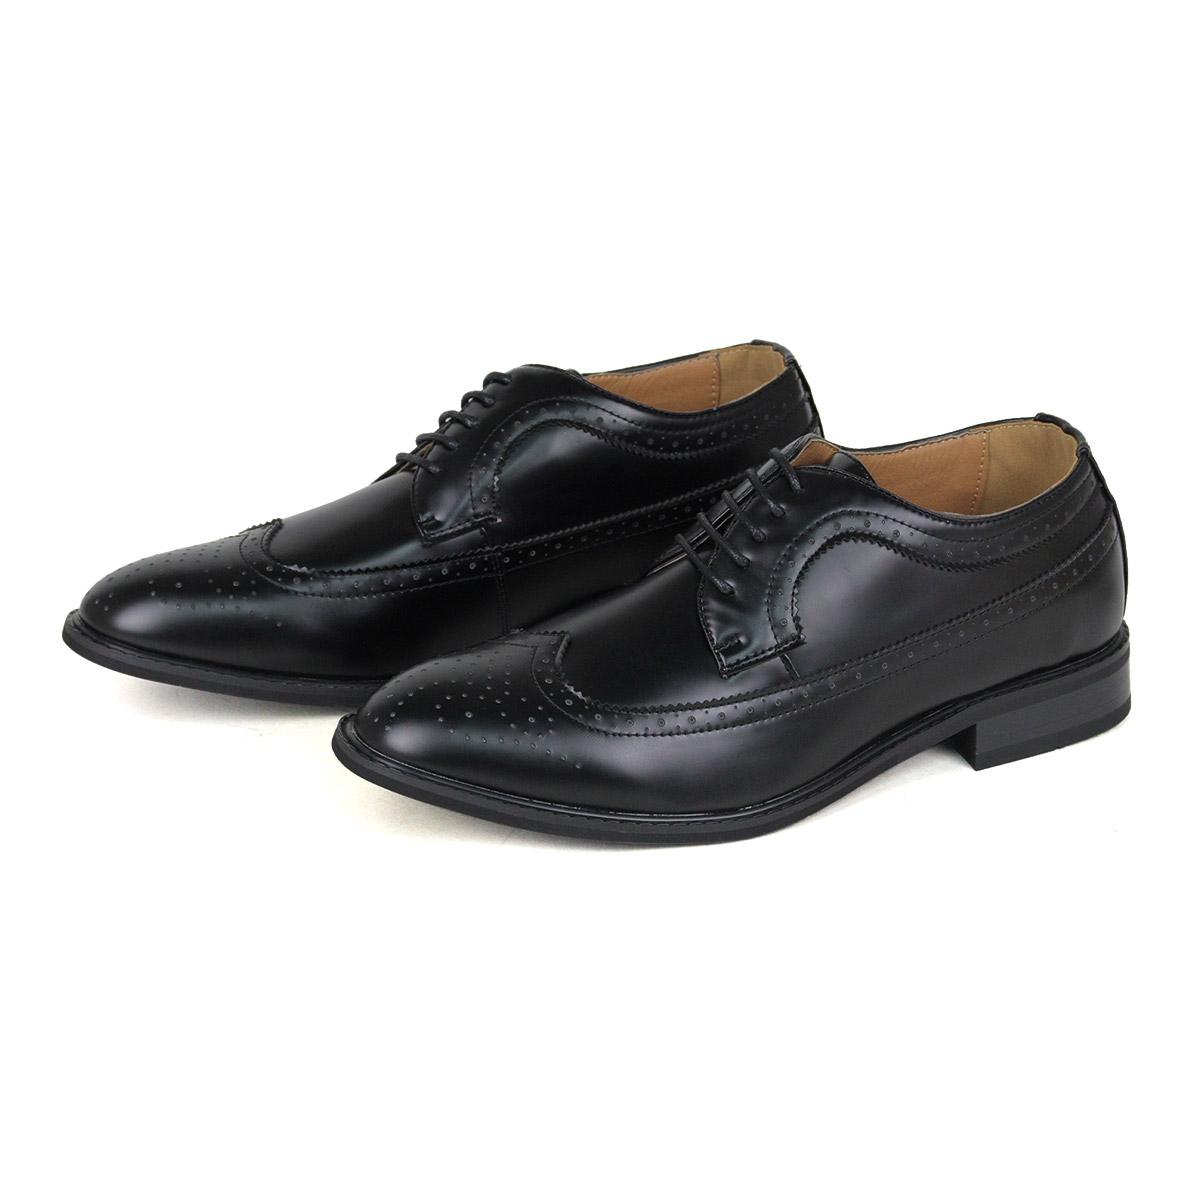 オックスフォードシューズ メンズ 革靴 黒 ウイングチップ 3E 24.5-30cm No.802 ...